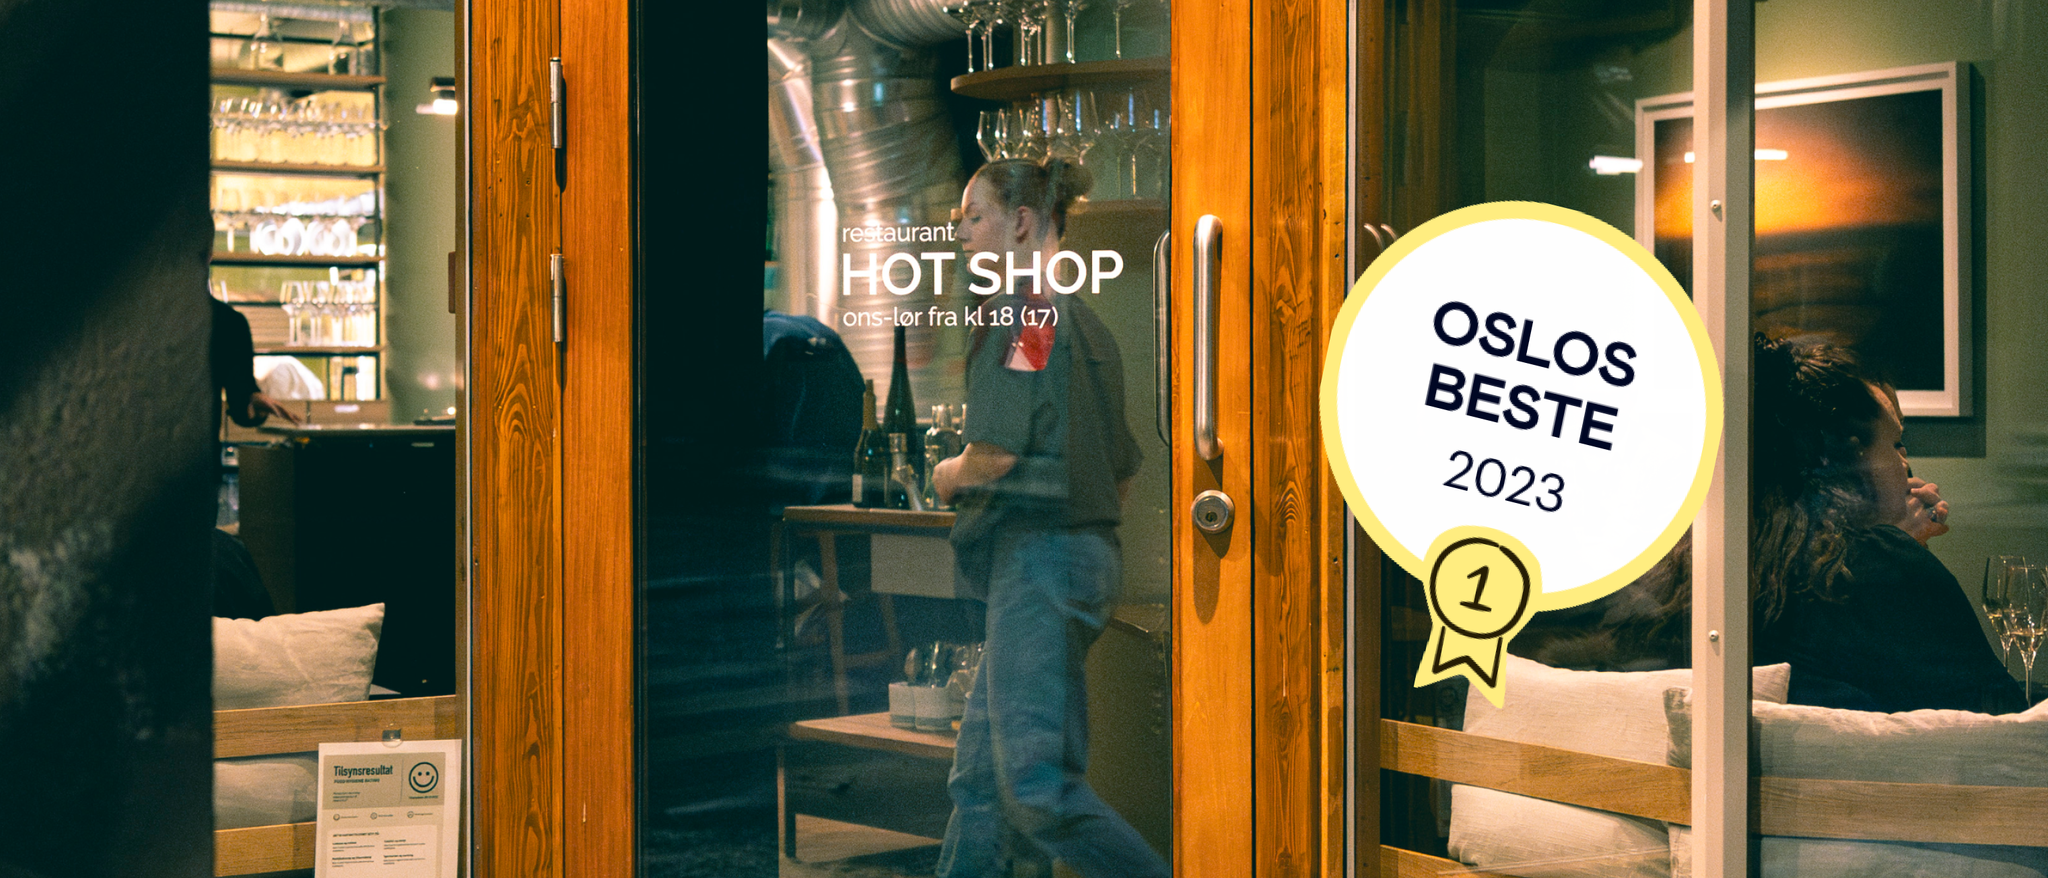 Hot Shop er vinner av Oslos beste service 2023